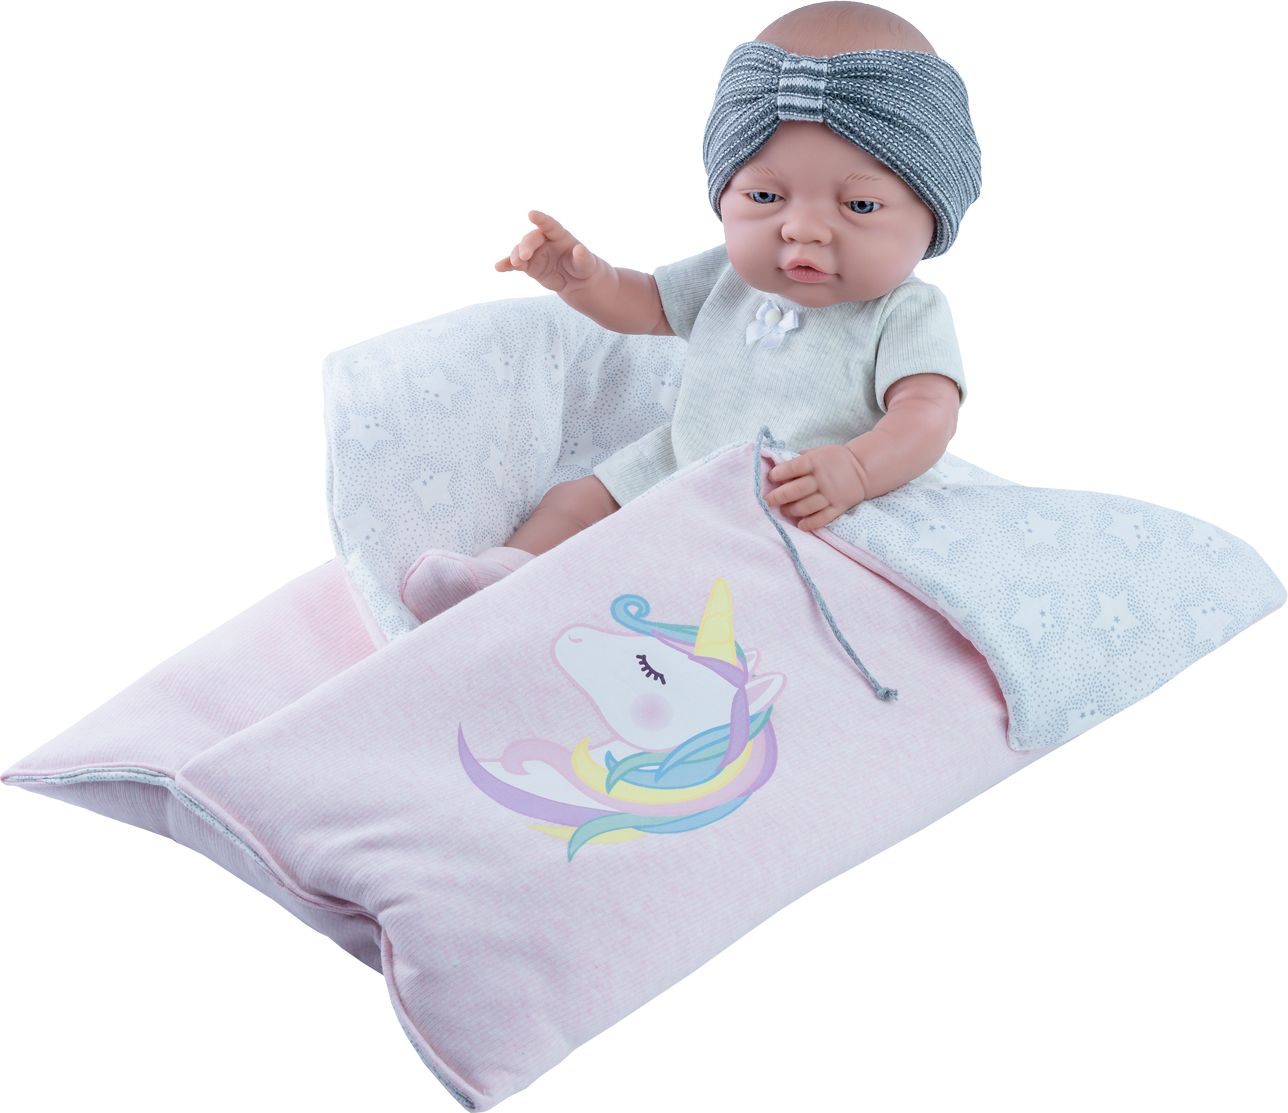 Realistické miminko - holčička Rozárka v pytli s jednorožcem - obrázek 1